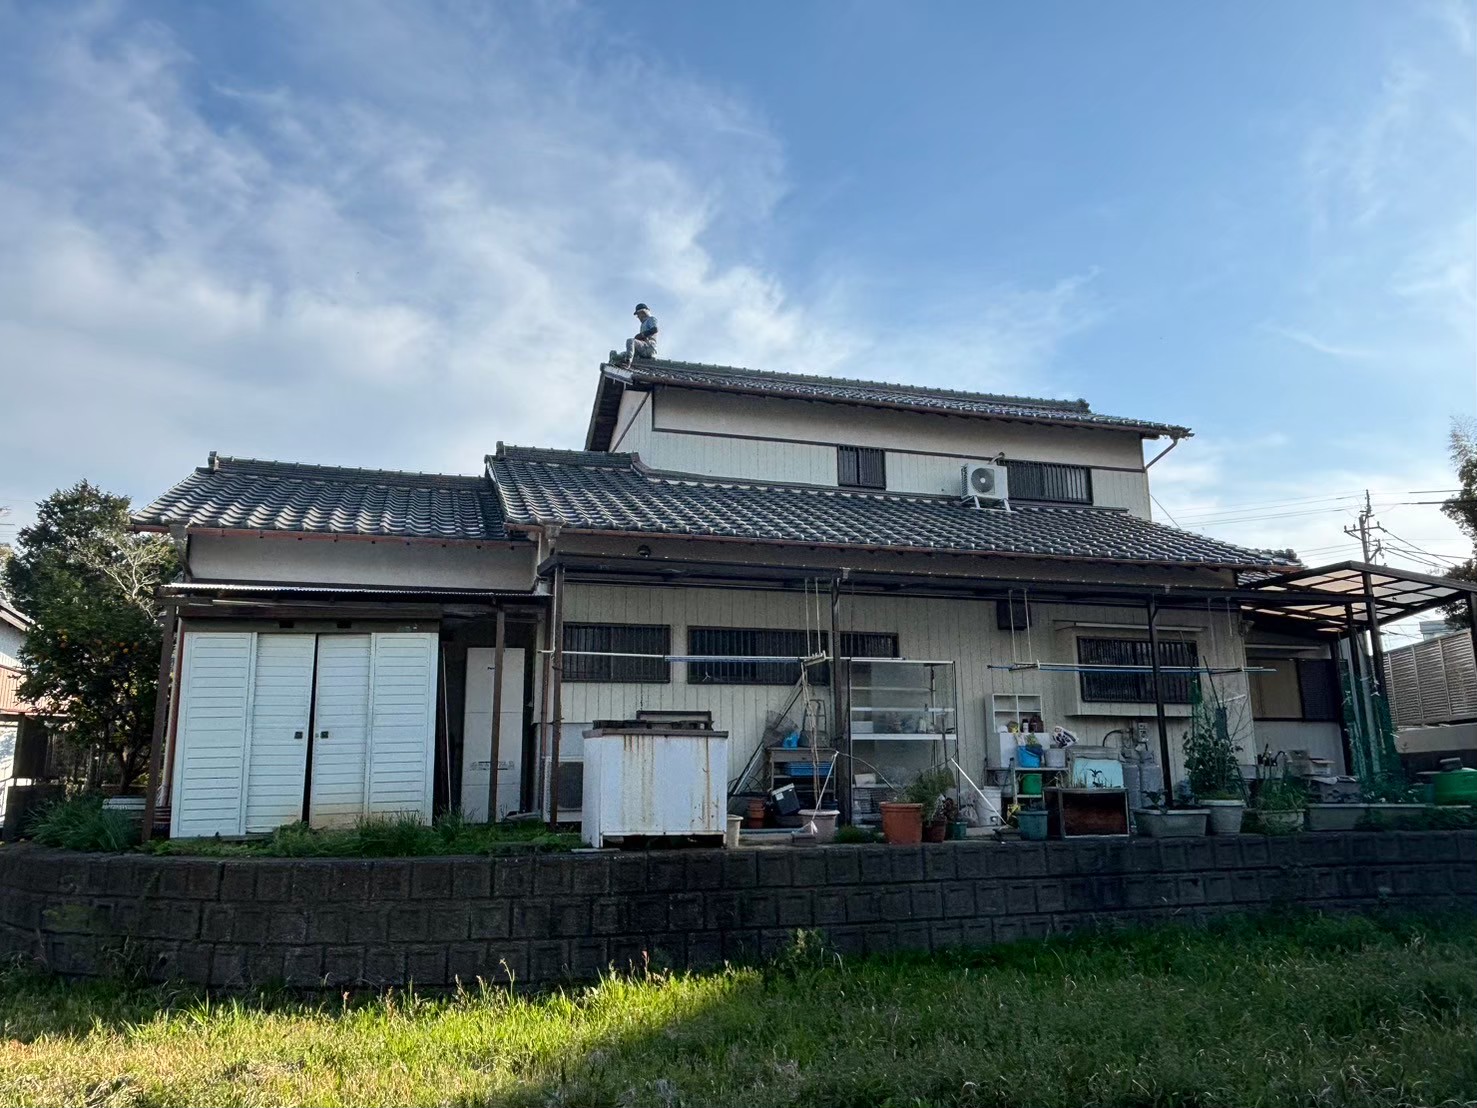 名古屋市守山区小幡にて釉薬瓦の屋根の無料点検。漆喰の劣化や雨樋の詰まりがありました